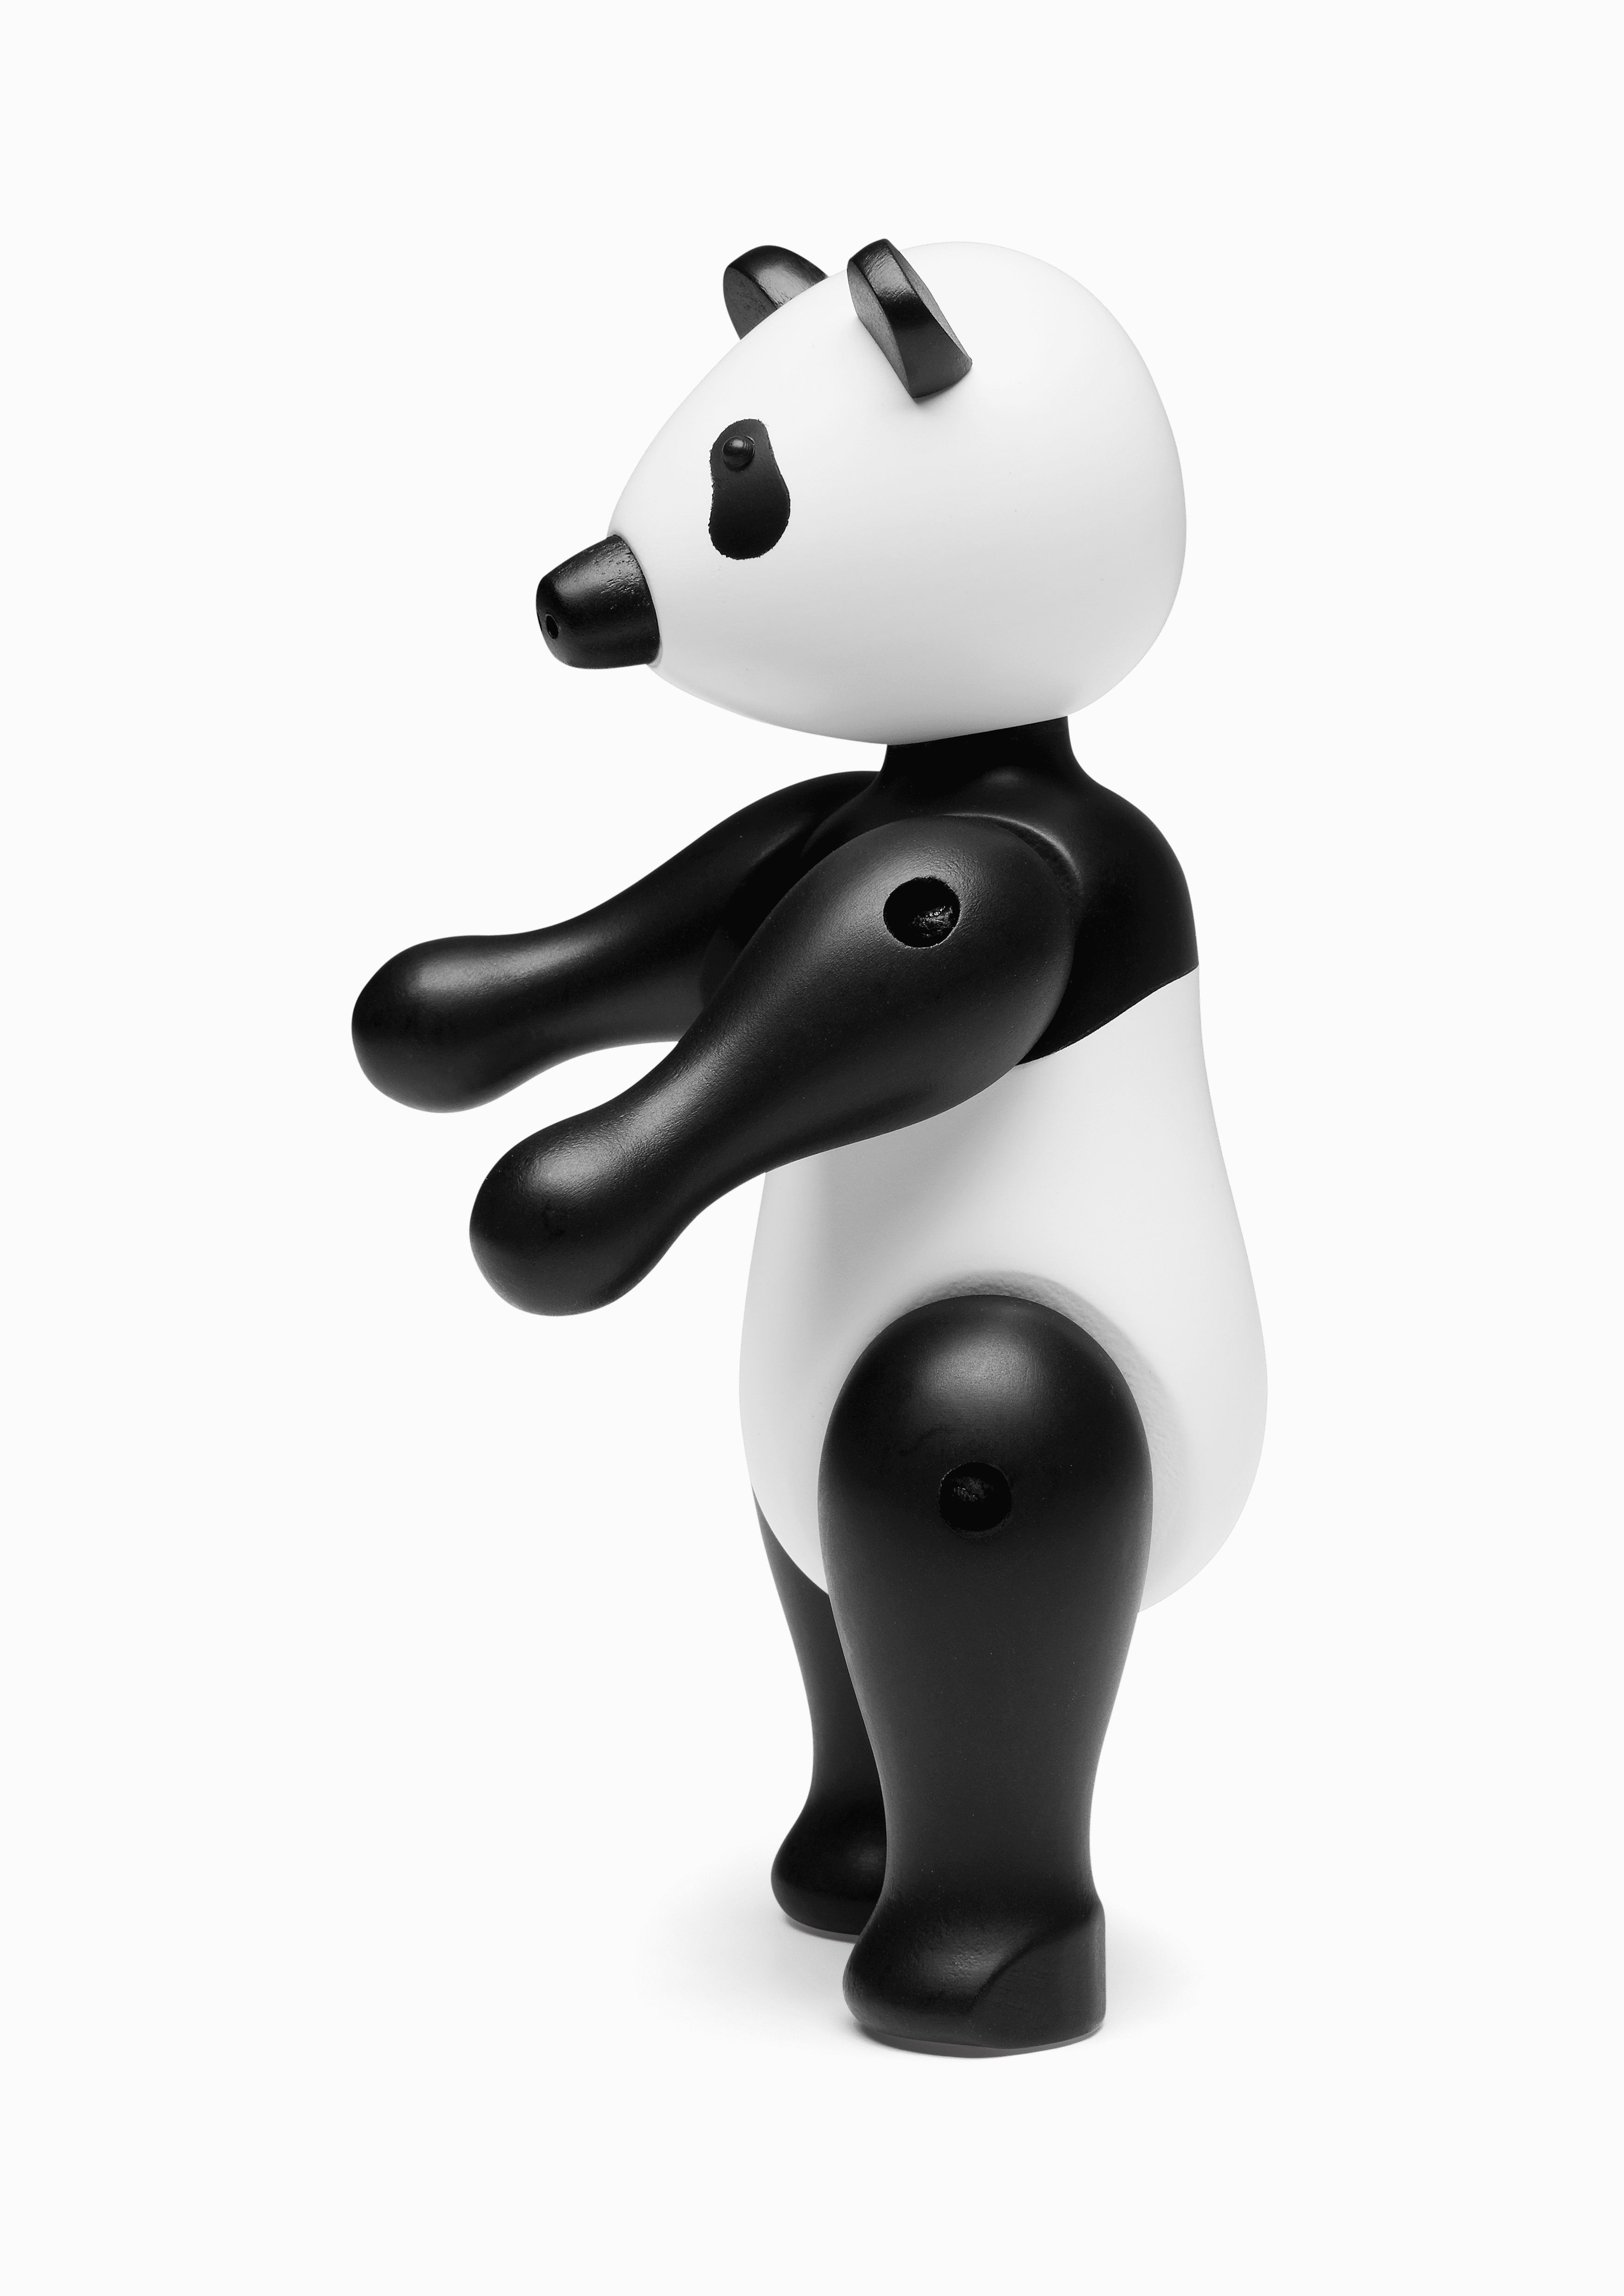 Pandabear medium